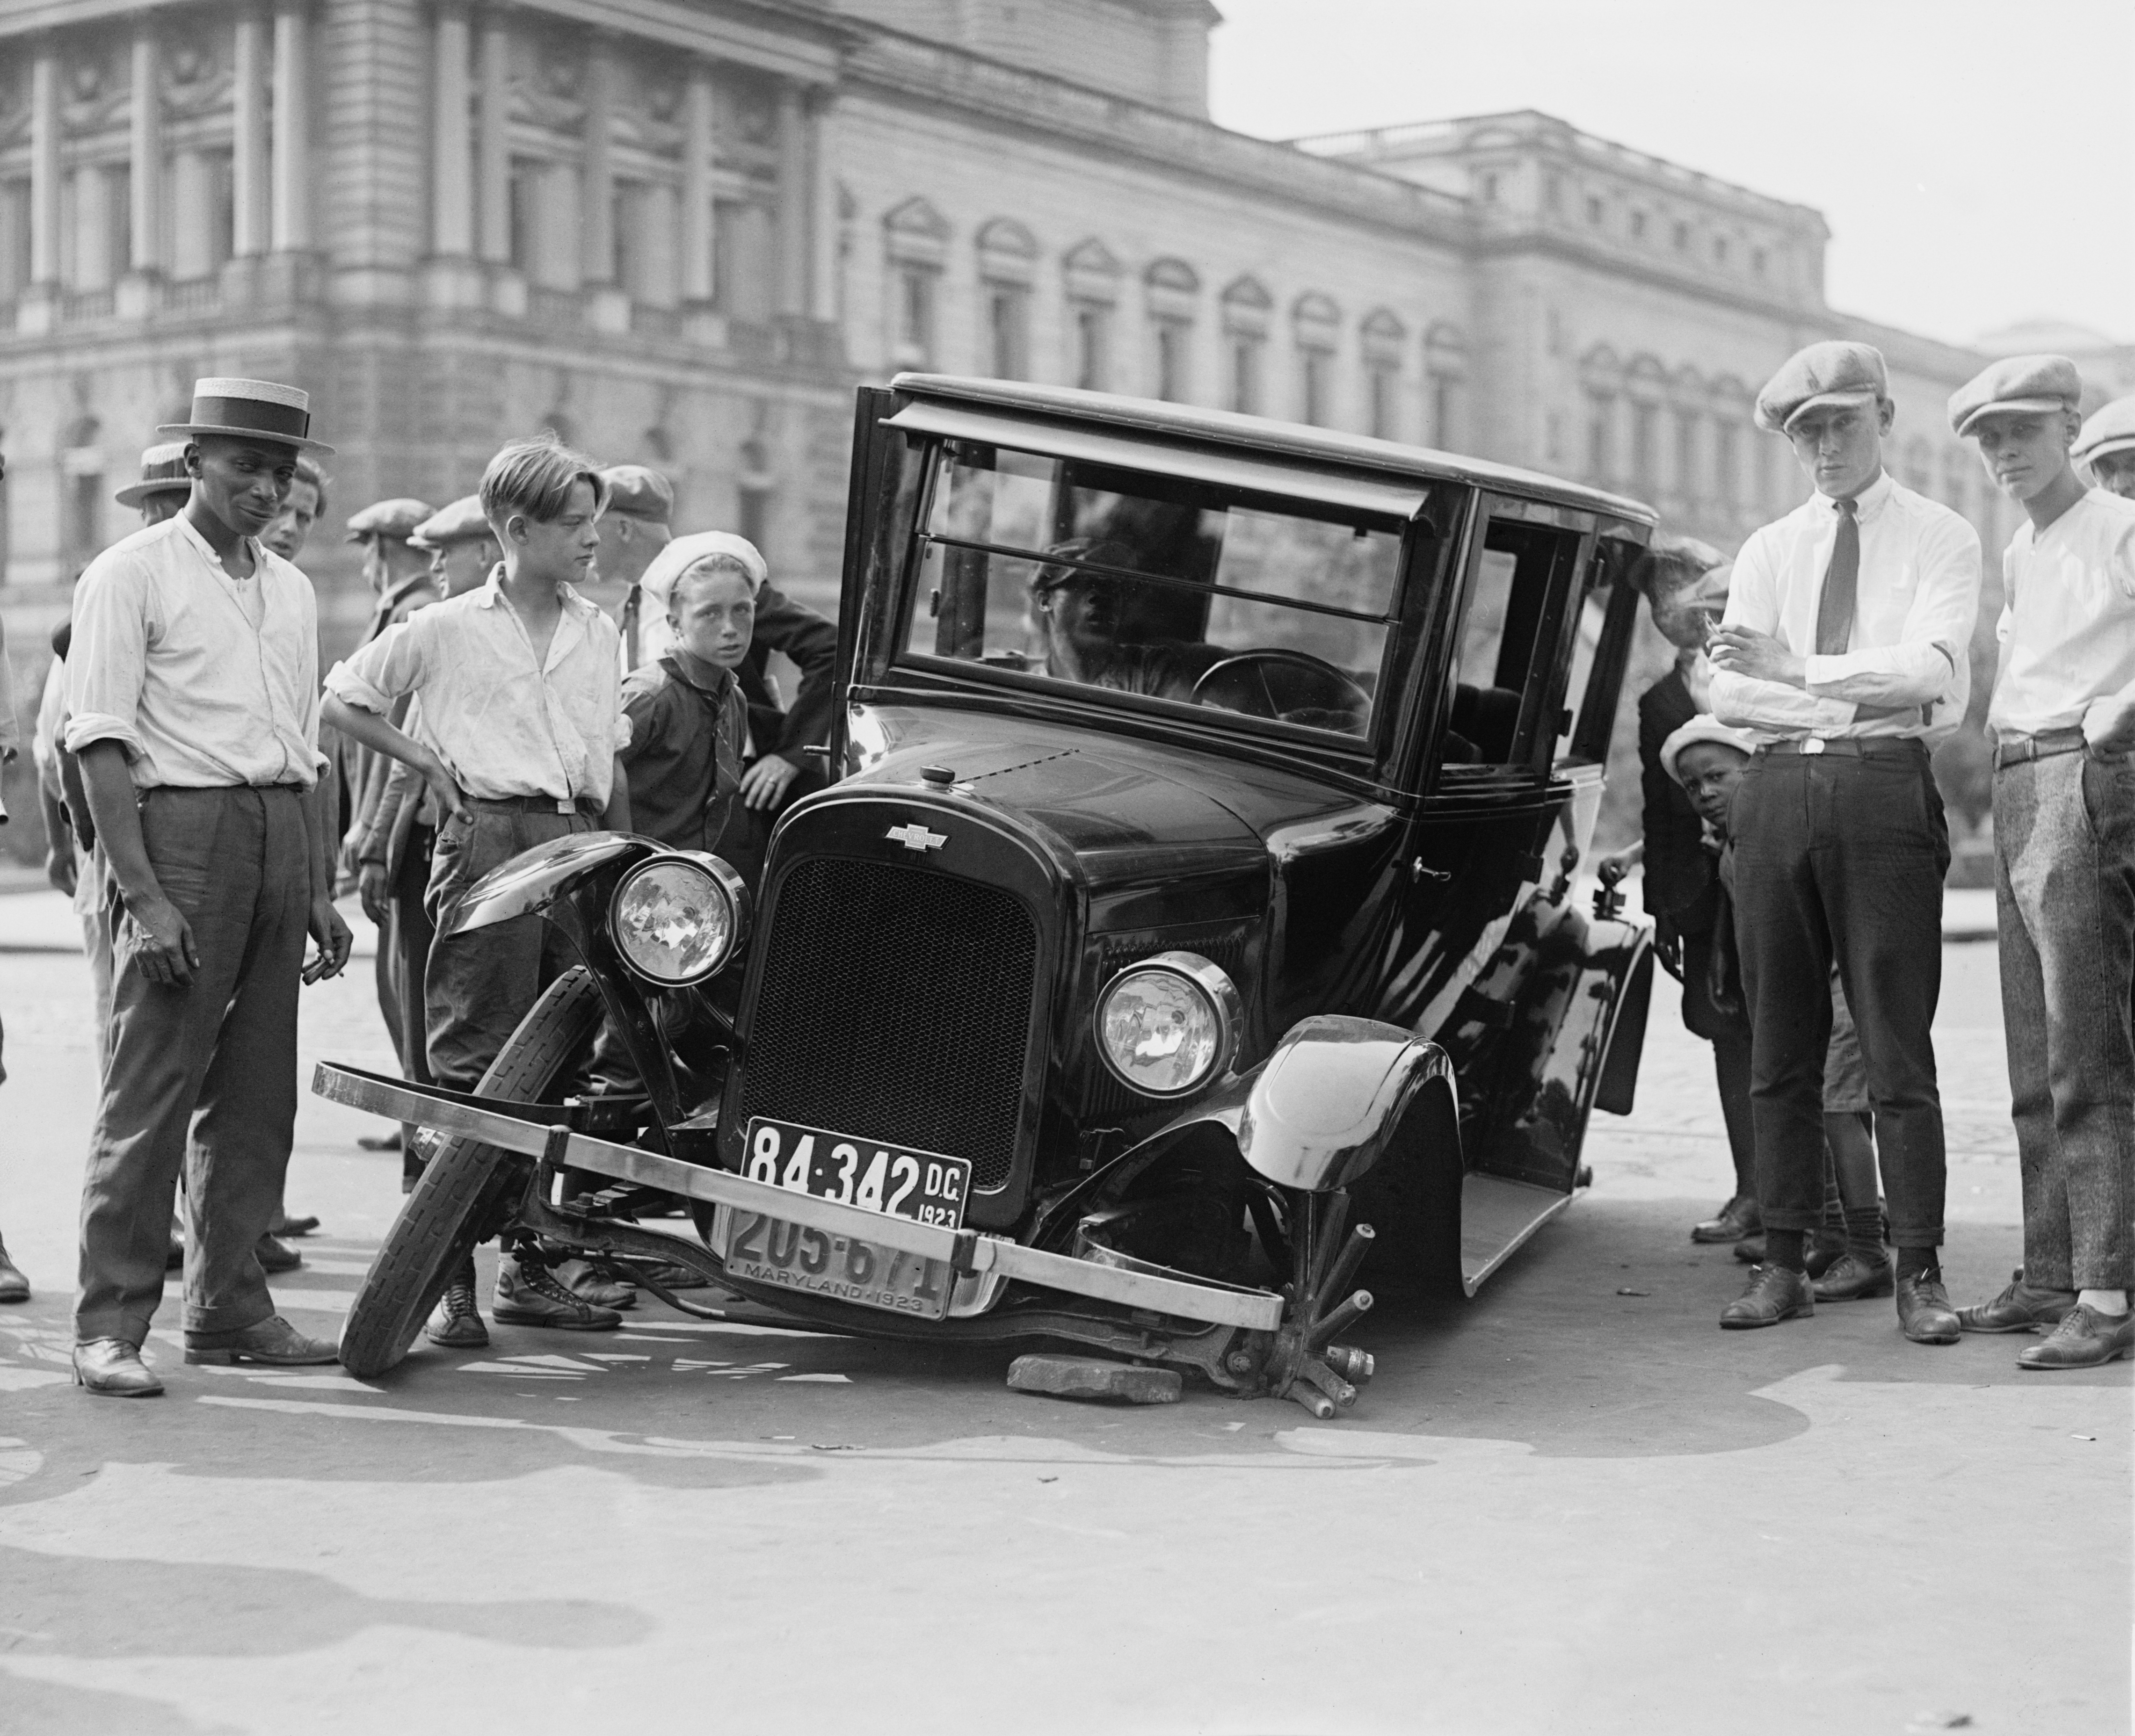 Auto wreck, USA, 1923